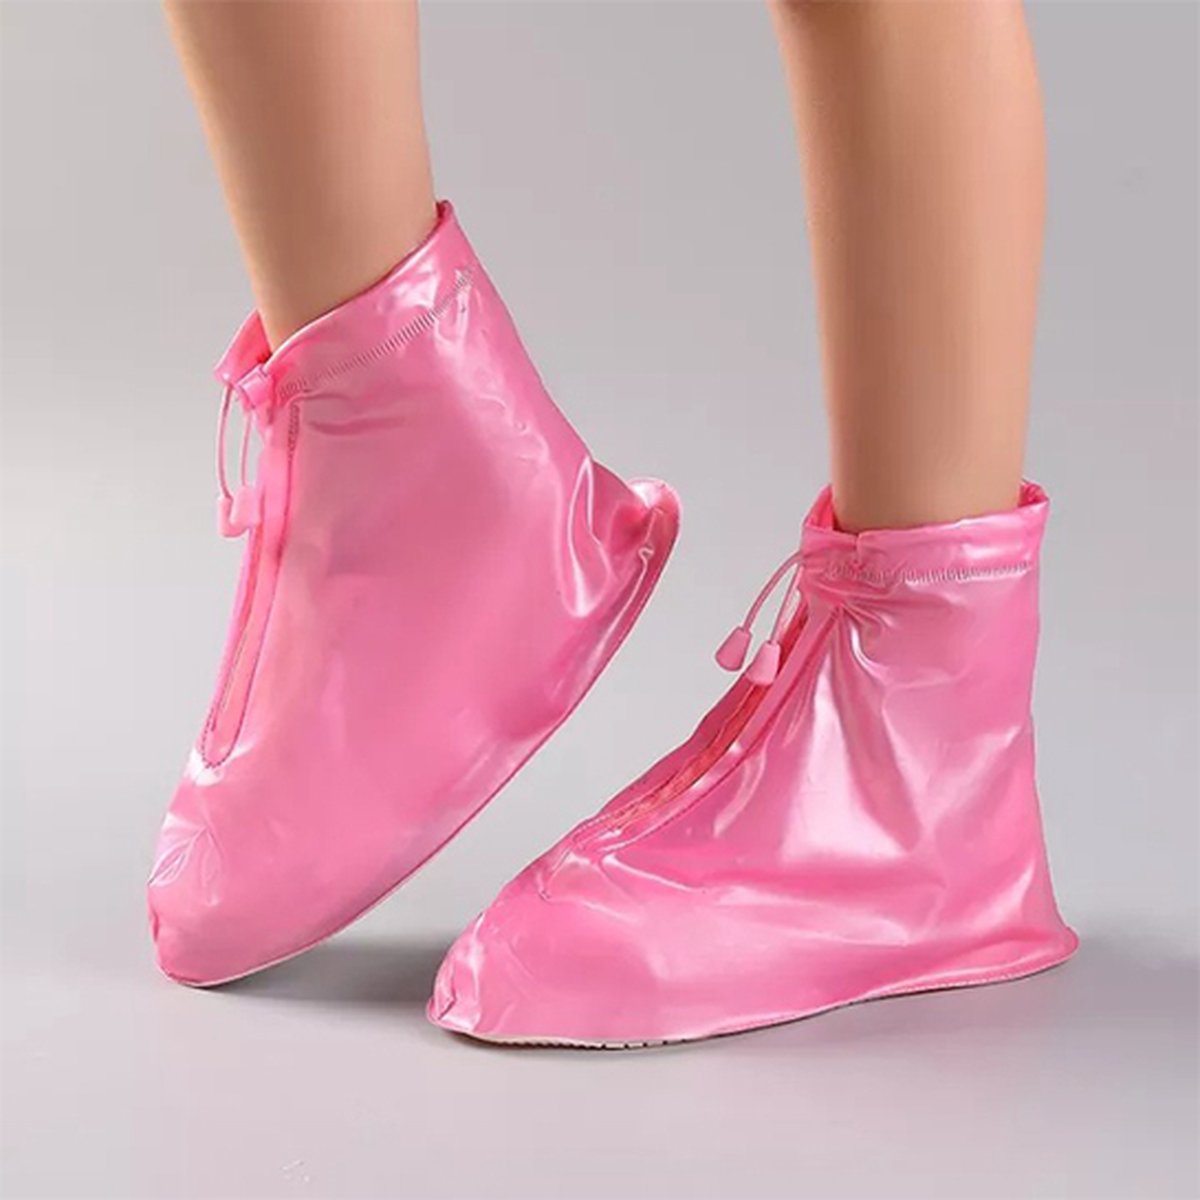 Regen overschoenen - Gekleurd - schoencover - Roze - Maat: 36/37